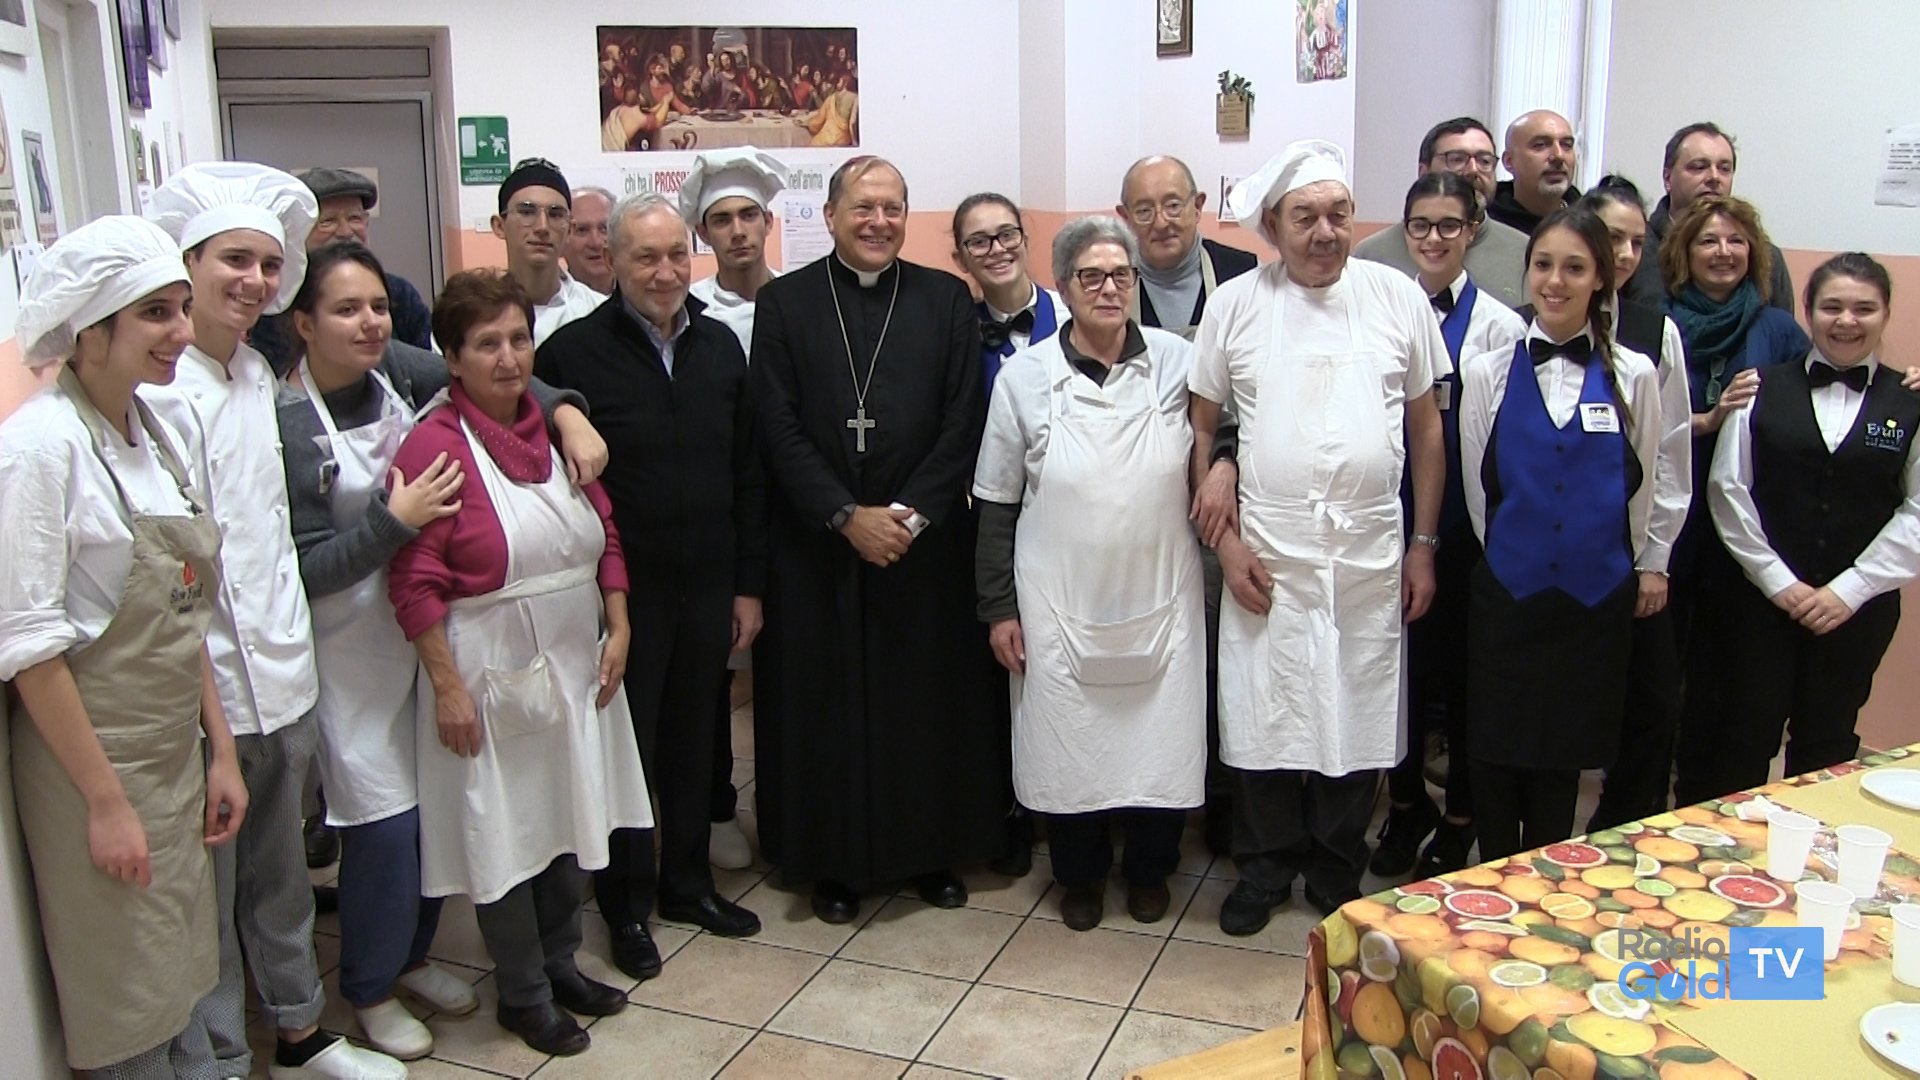 Gusto e solidarietà alla Caritas, con Luigino Bruni e il vescovo Gallese